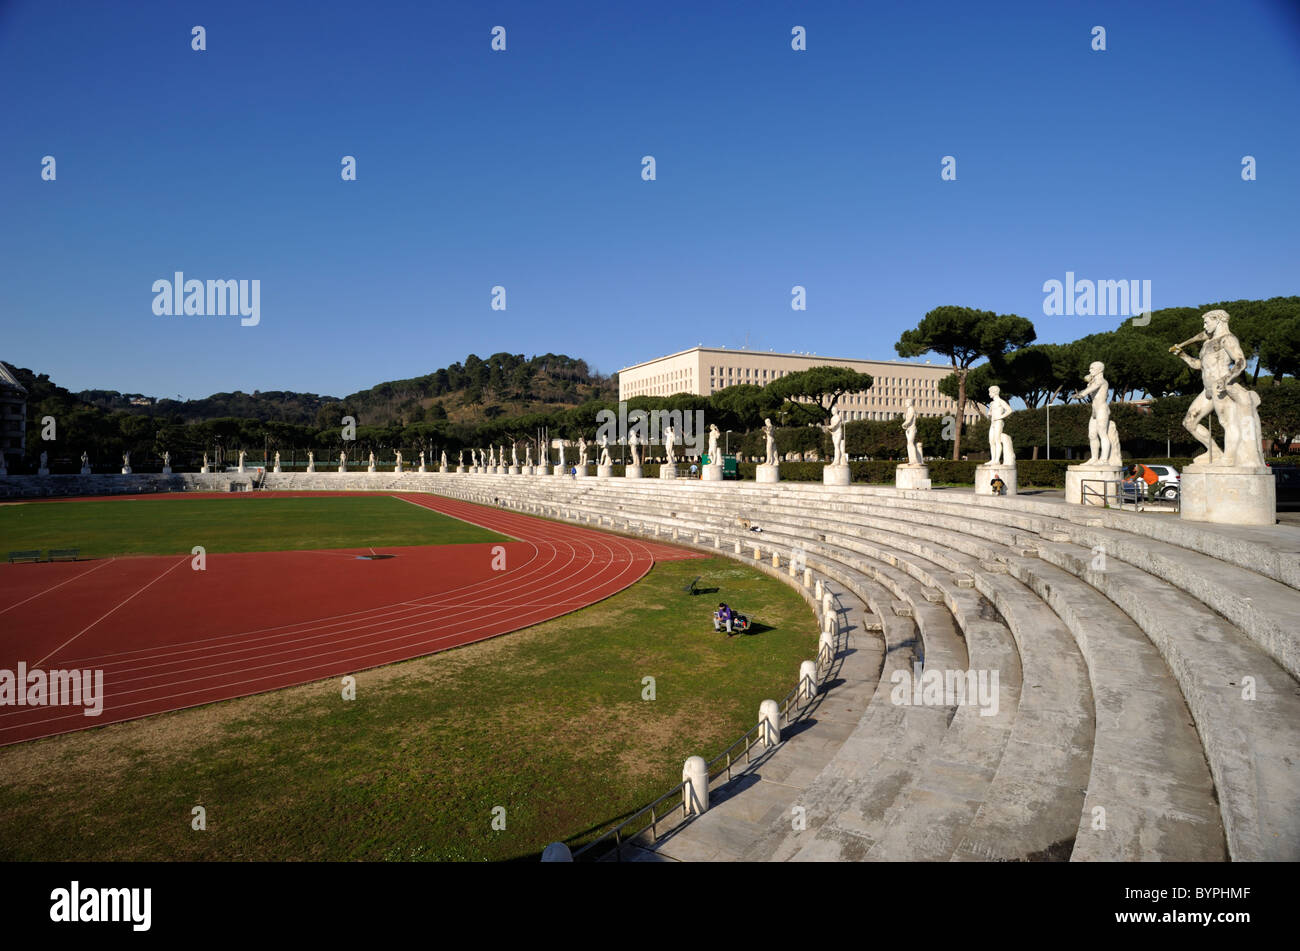 Italy, Rome, Foro Italico, Stadio dei Marmi, Marble Stadium Stock Photo